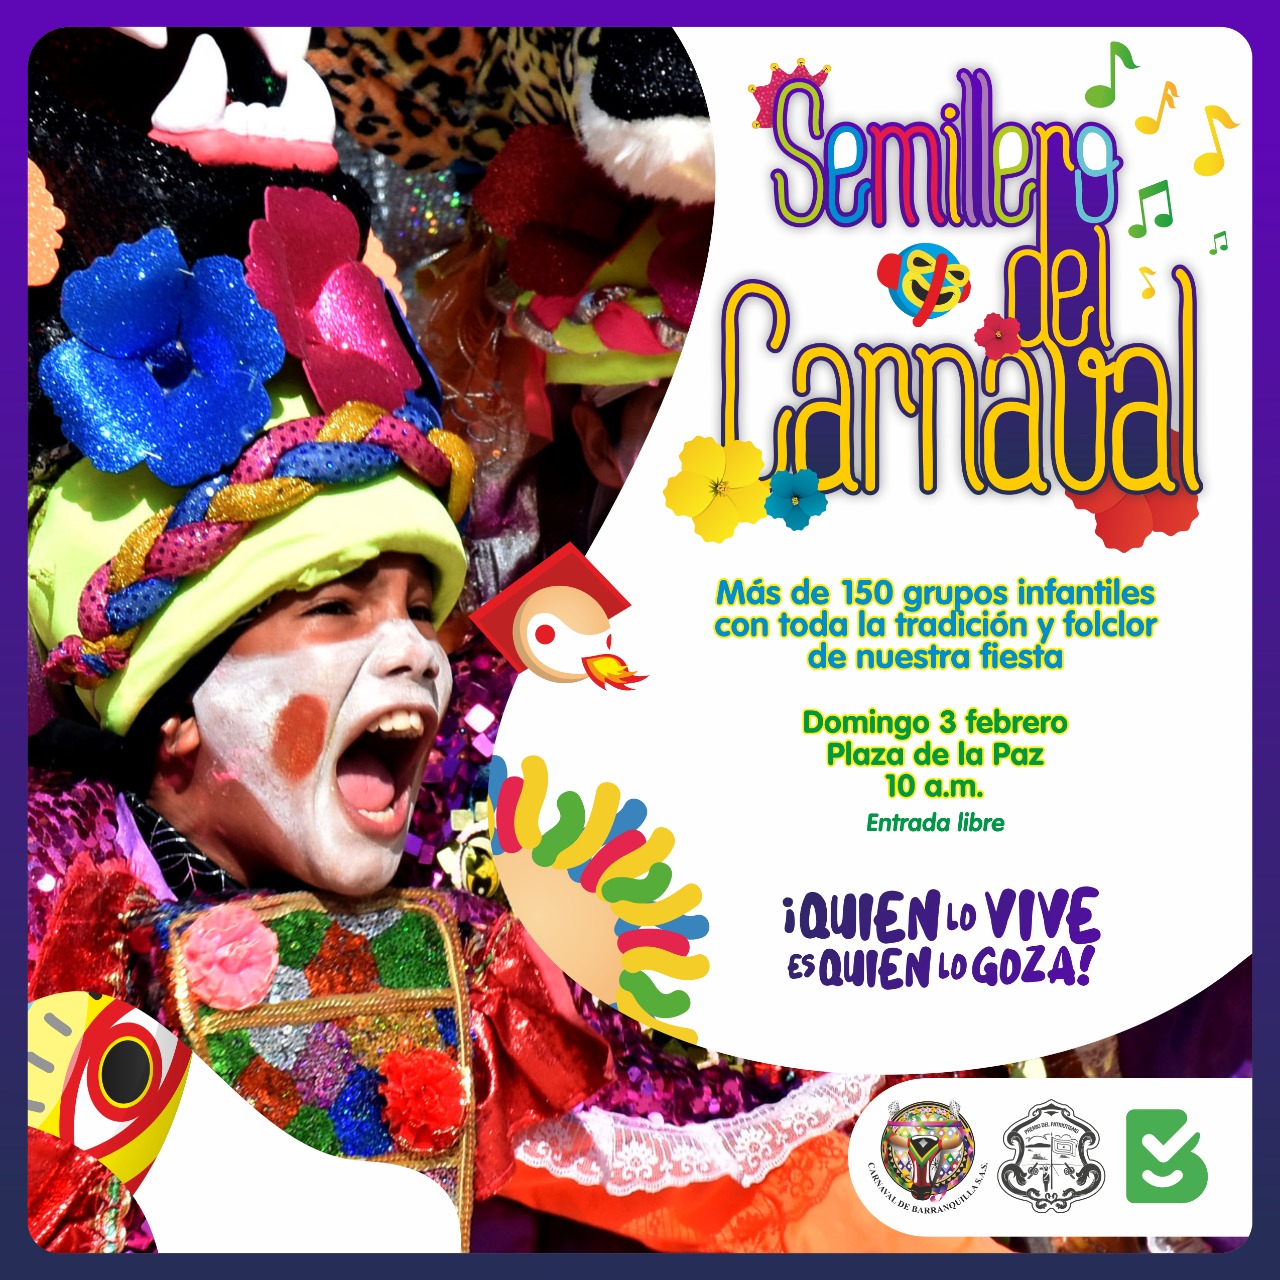 Este domingo, Regresa el Semillero del Carnaval con la participación de 156 grupos